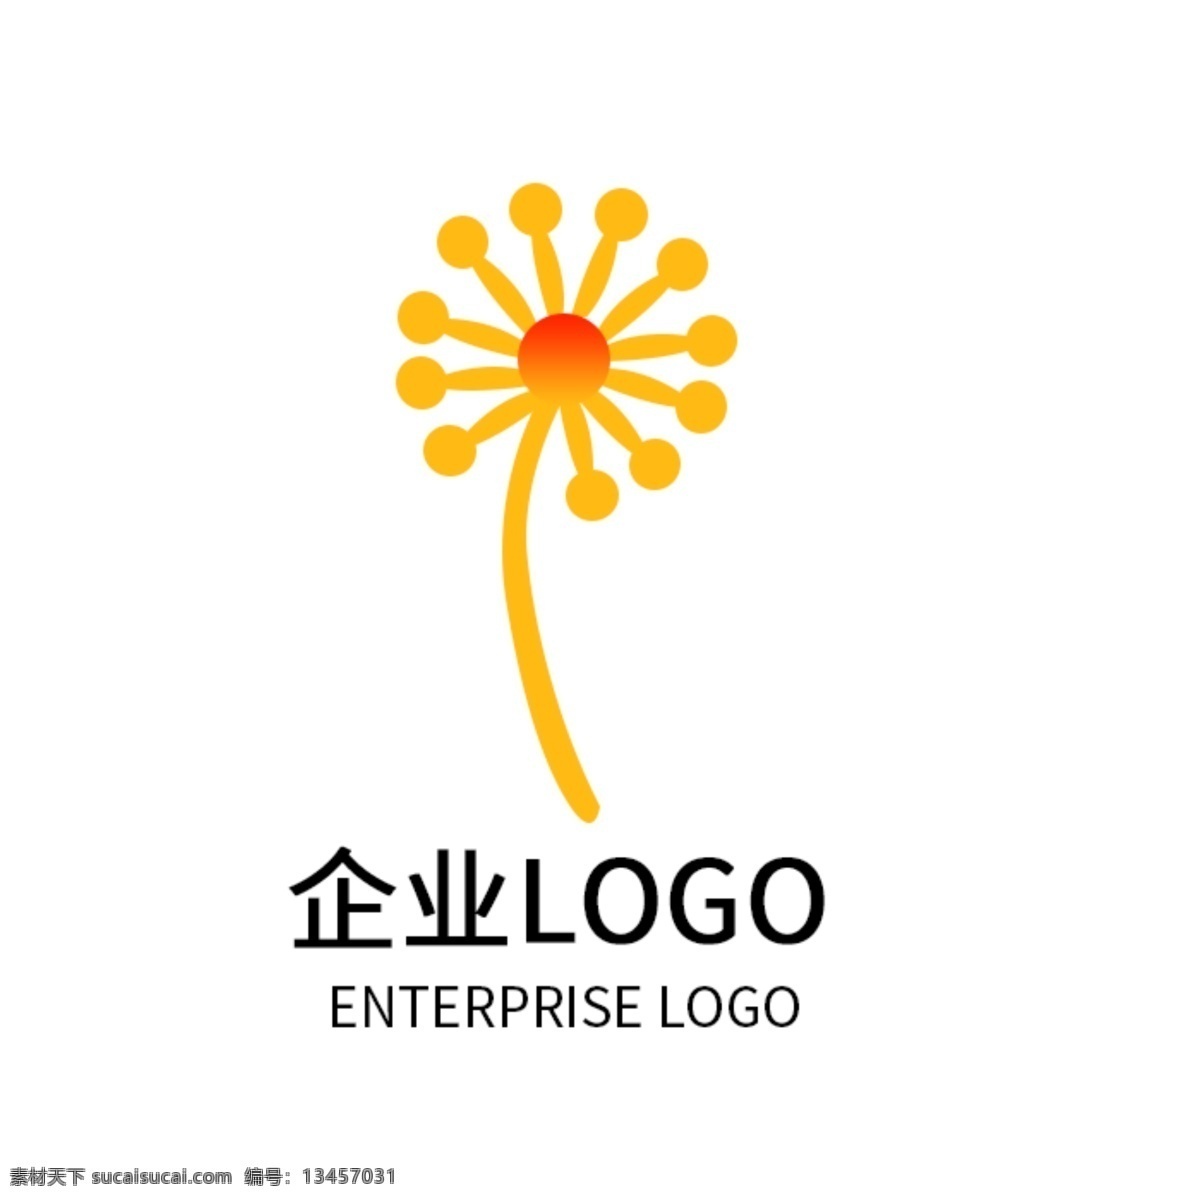 艺术 公司 logo 企业 标志 橙色渐变 企业logo 标志设计 top排名 logo设计